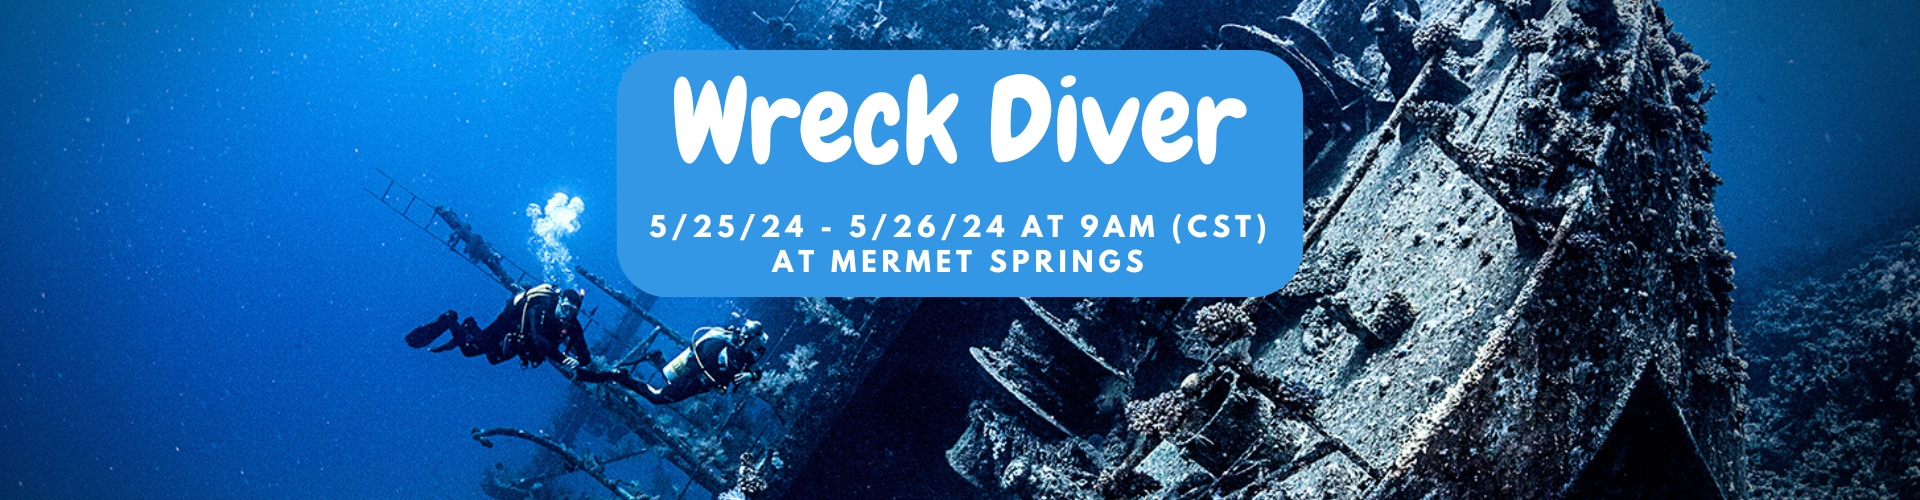 5/25 Wreck Diver